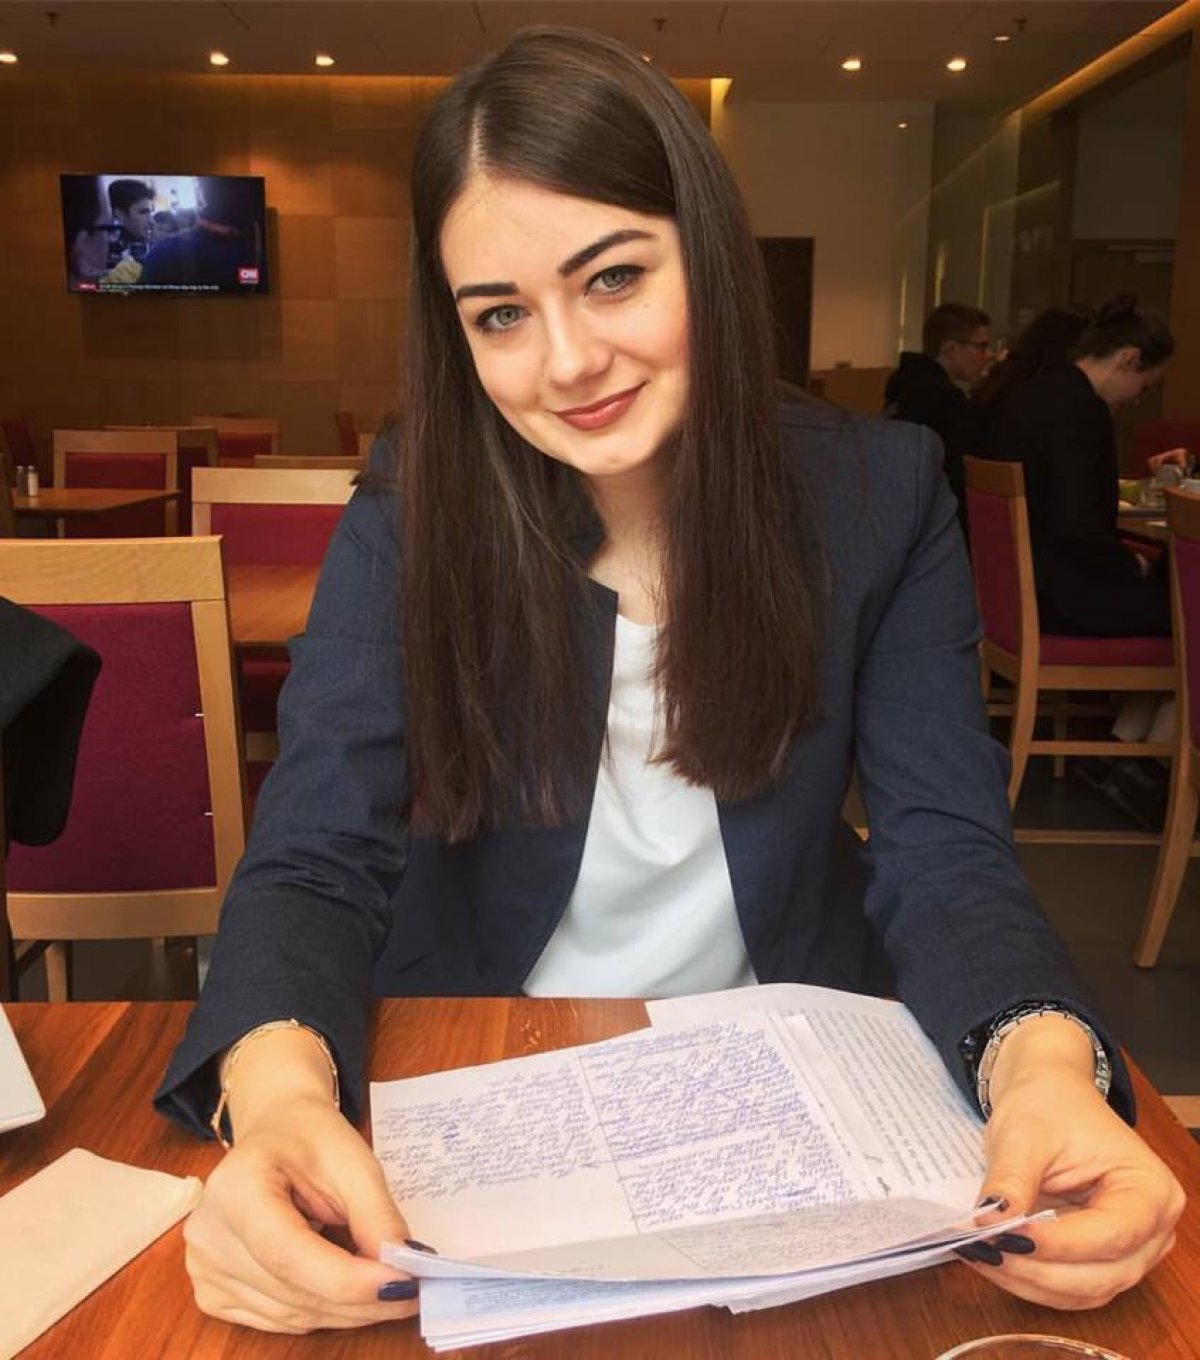 Валерия Боднарь из Молдовы учится на первом курсе магистратуры Юридического института, программа «Корпоративный юрист».